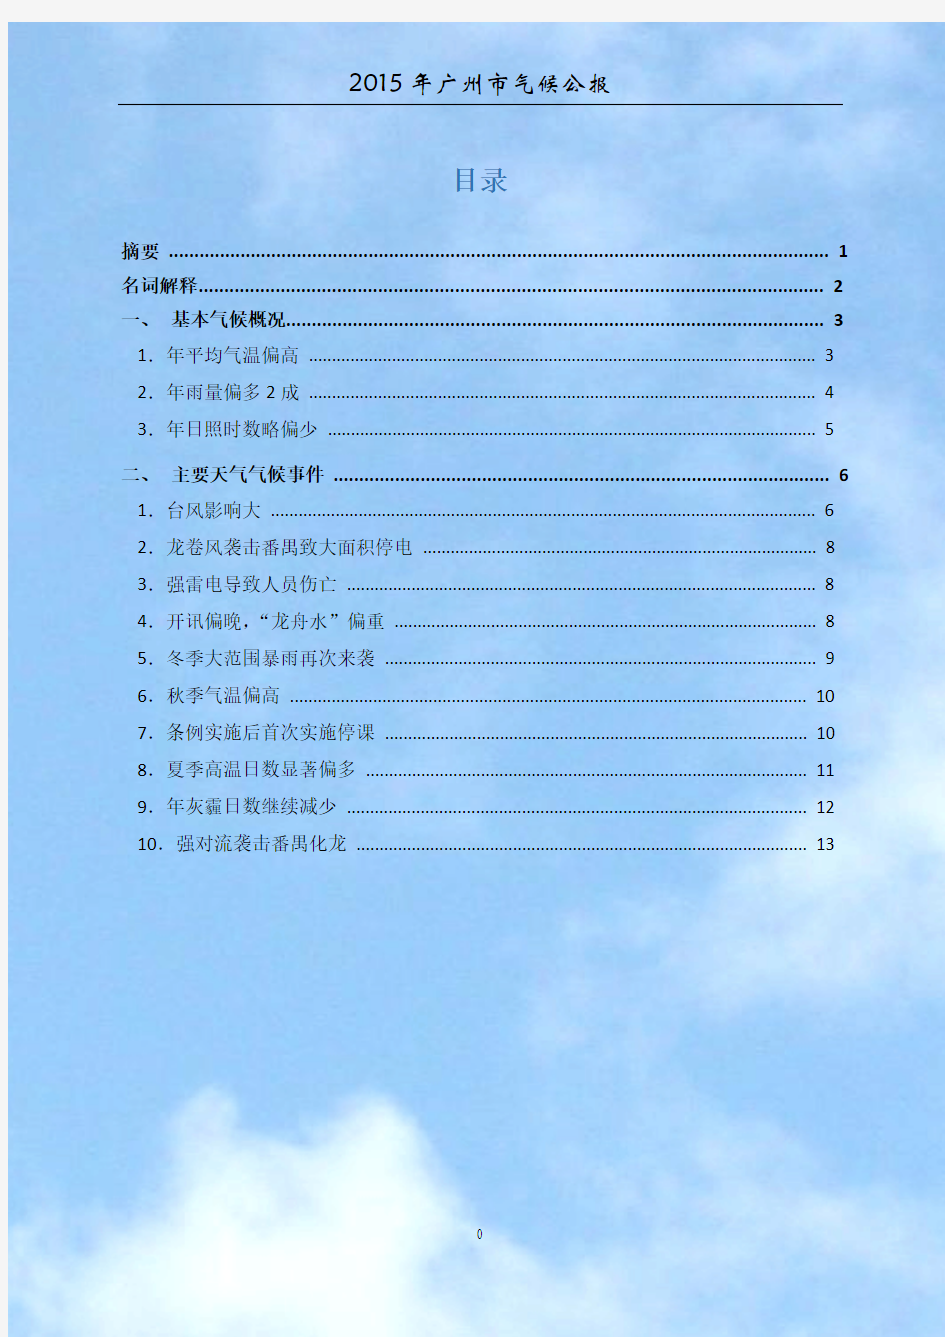 2015年广州市气候公报